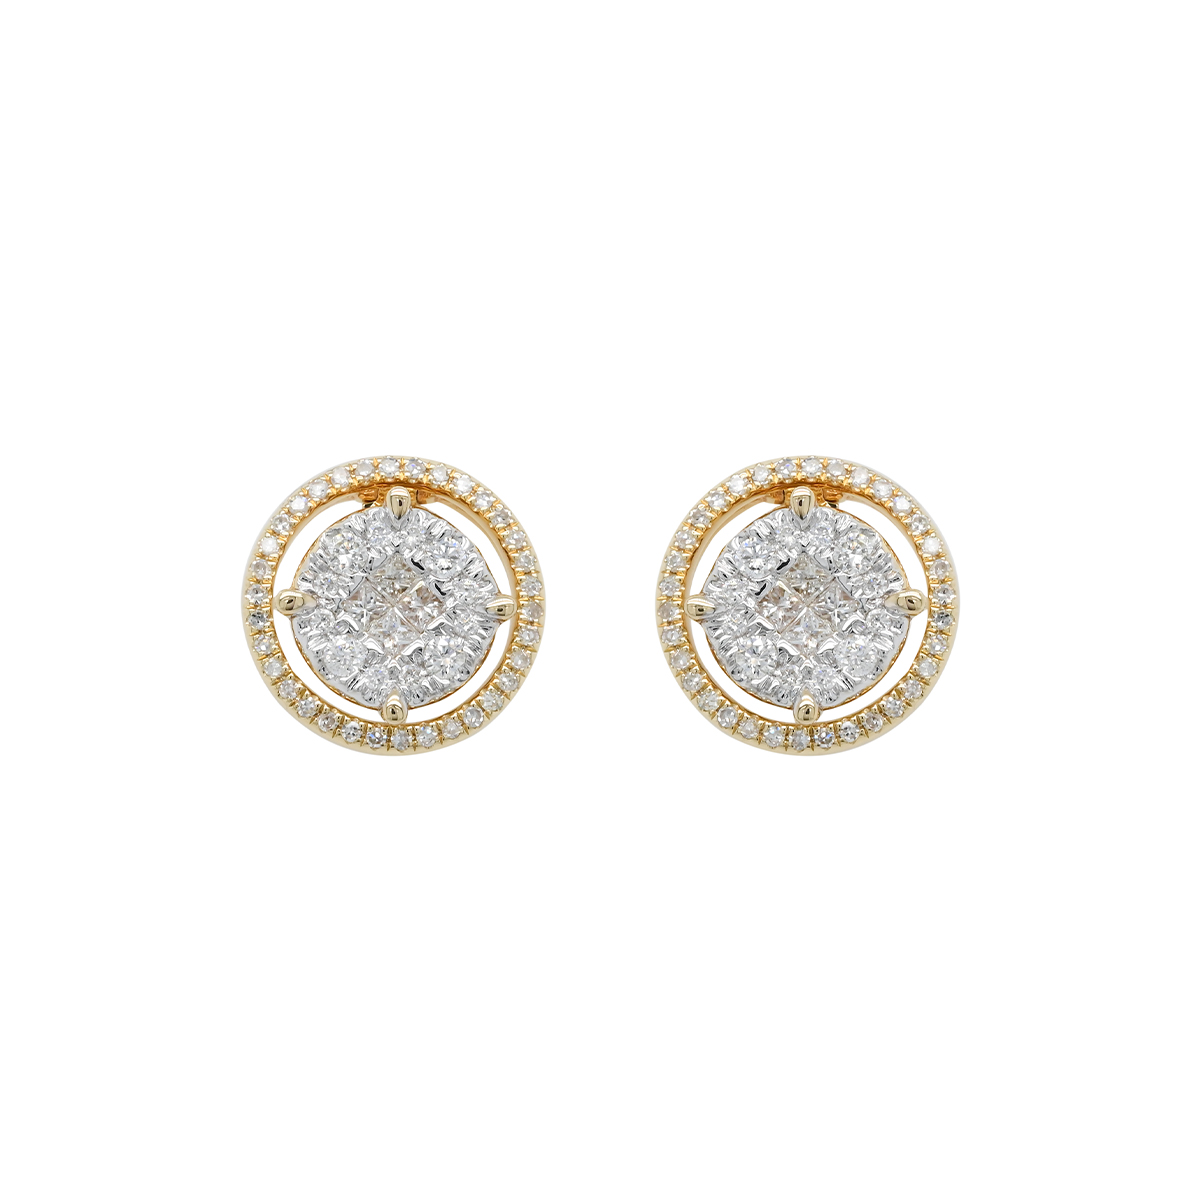 Buy Gold Earrings for Women by Iski Uski Online | Ajio.com-sgquangbinhtourist.com.vn